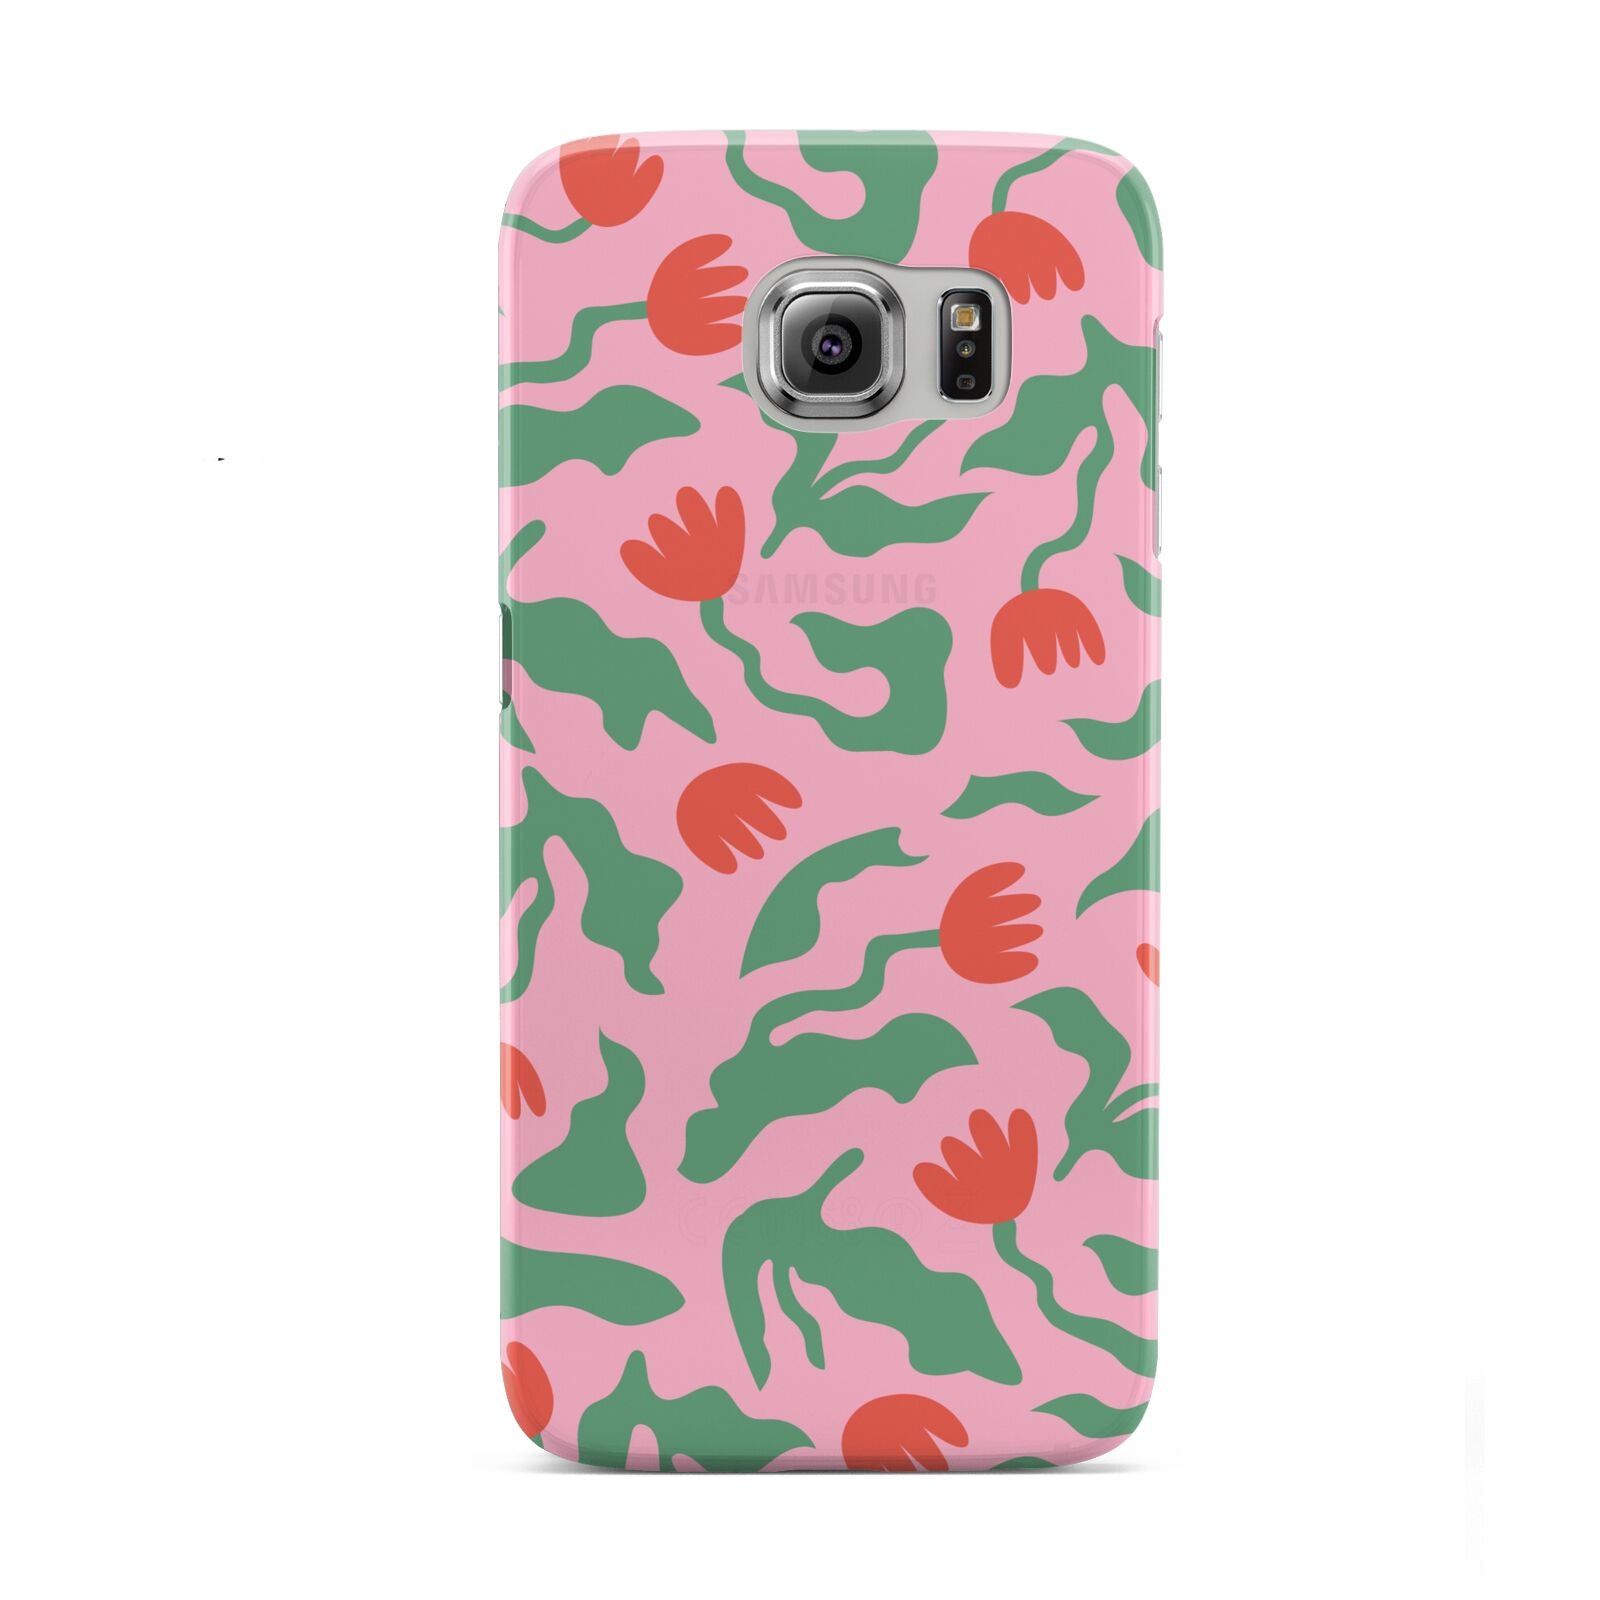 Simple Floral Samsung Galaxy S6 Case